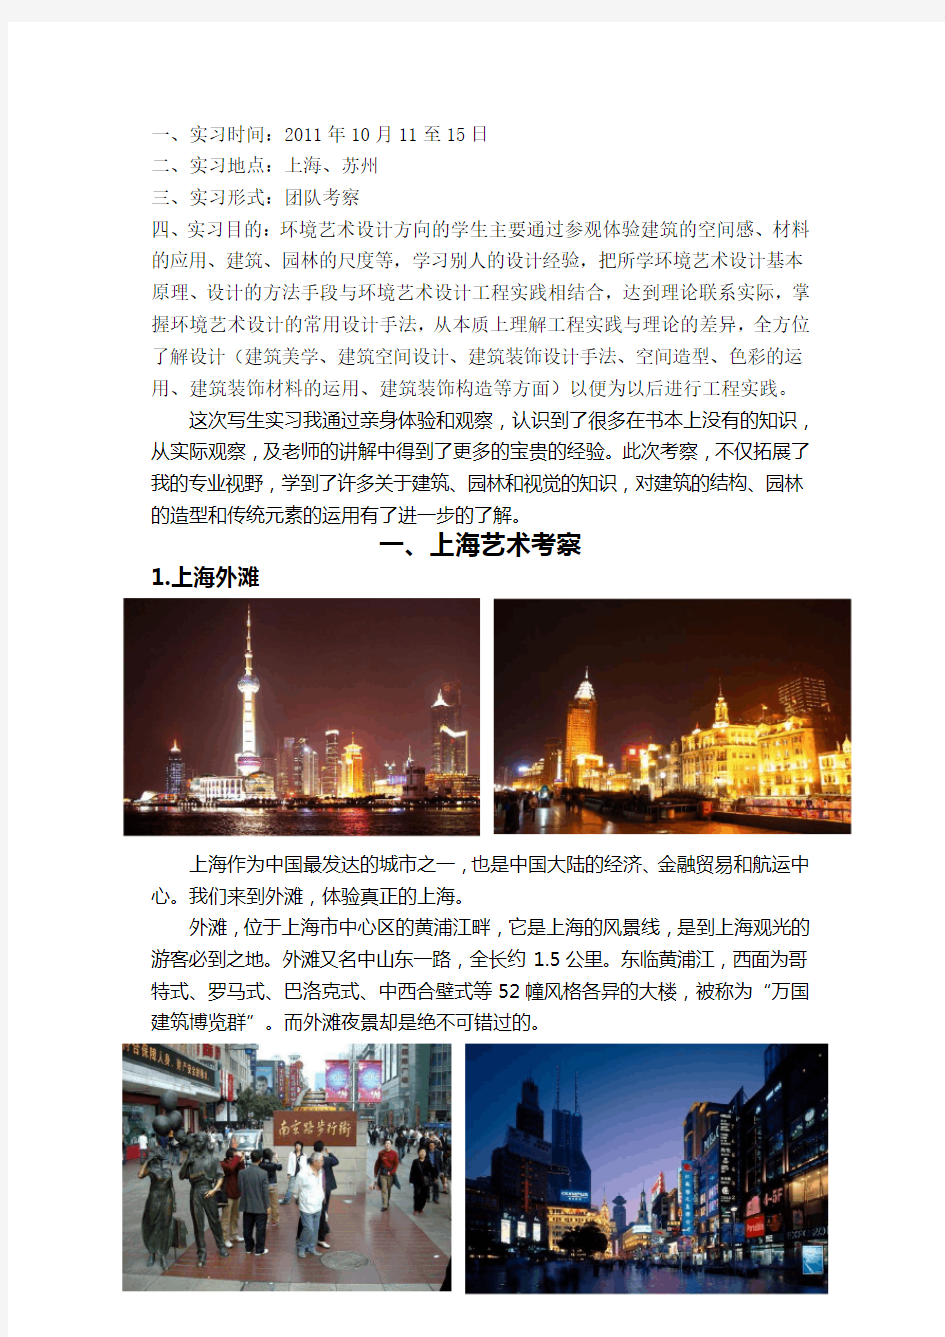 环境艺术设计上海、苏州考察报告(图文版)